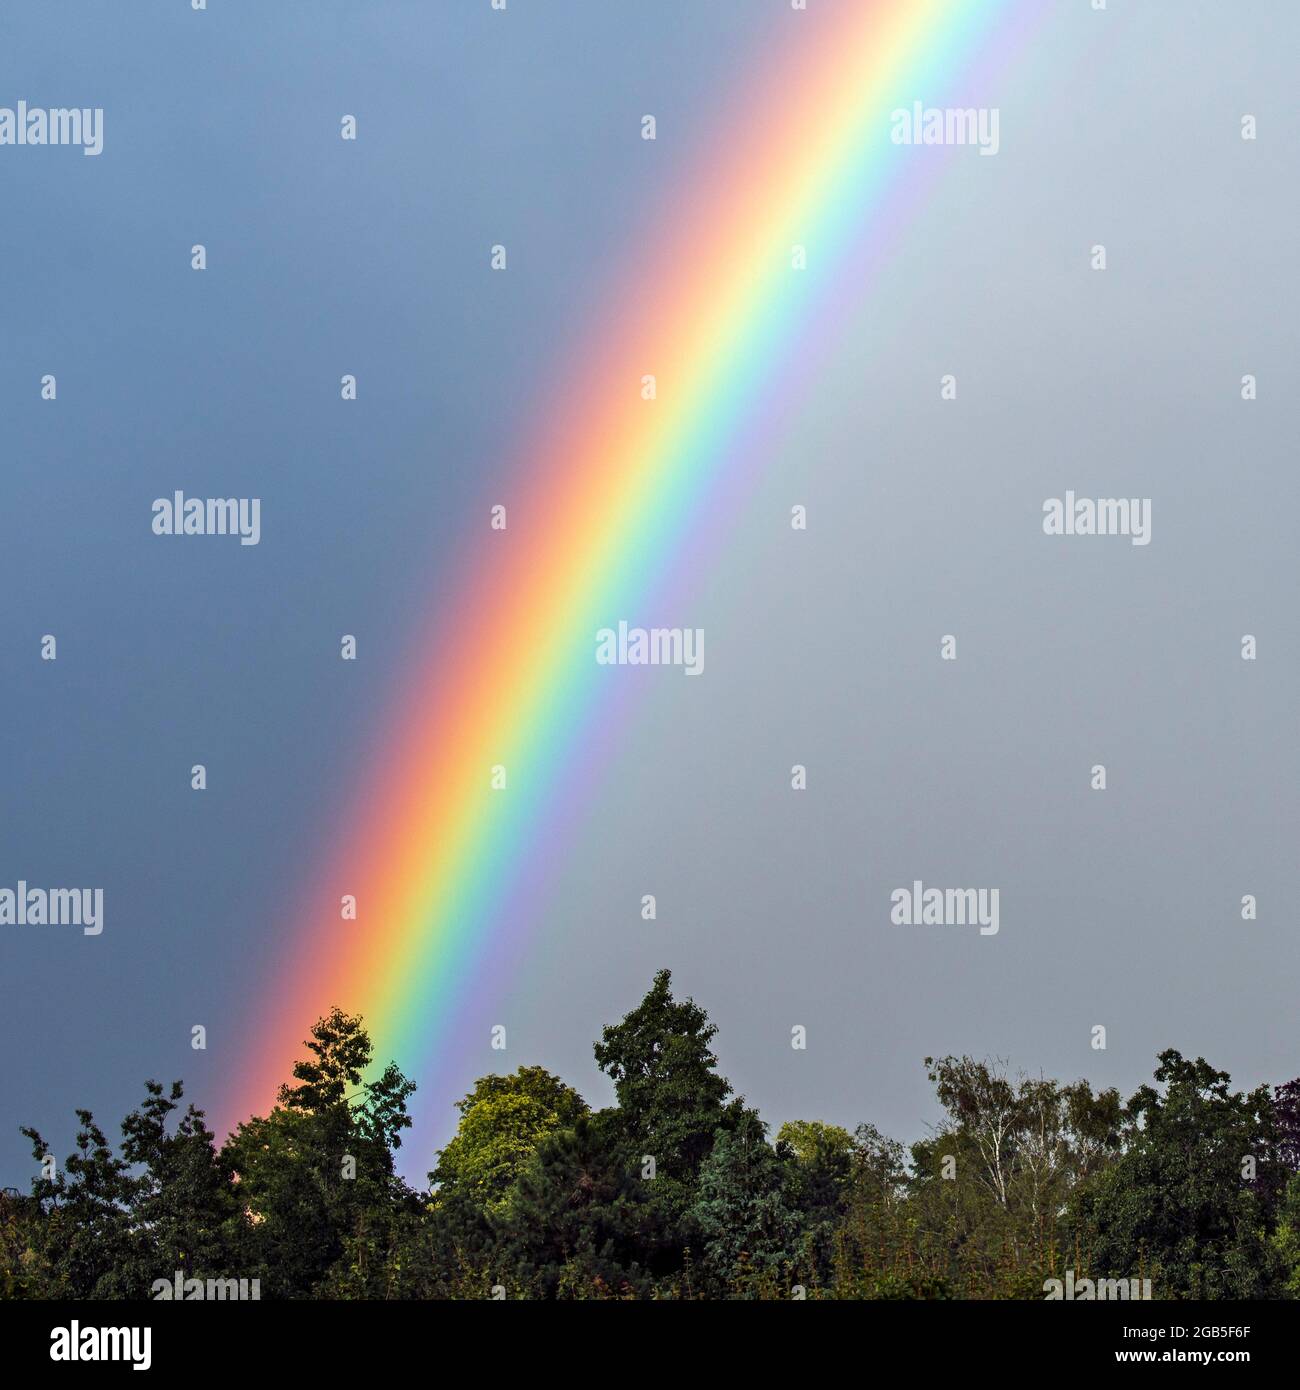 Arcobaleno, arco circolare multicolore, fenomeno meteorologico causato dalla riflessione, rifrazione e dispersione della luce nelle gocce d'acqua Foto Stock